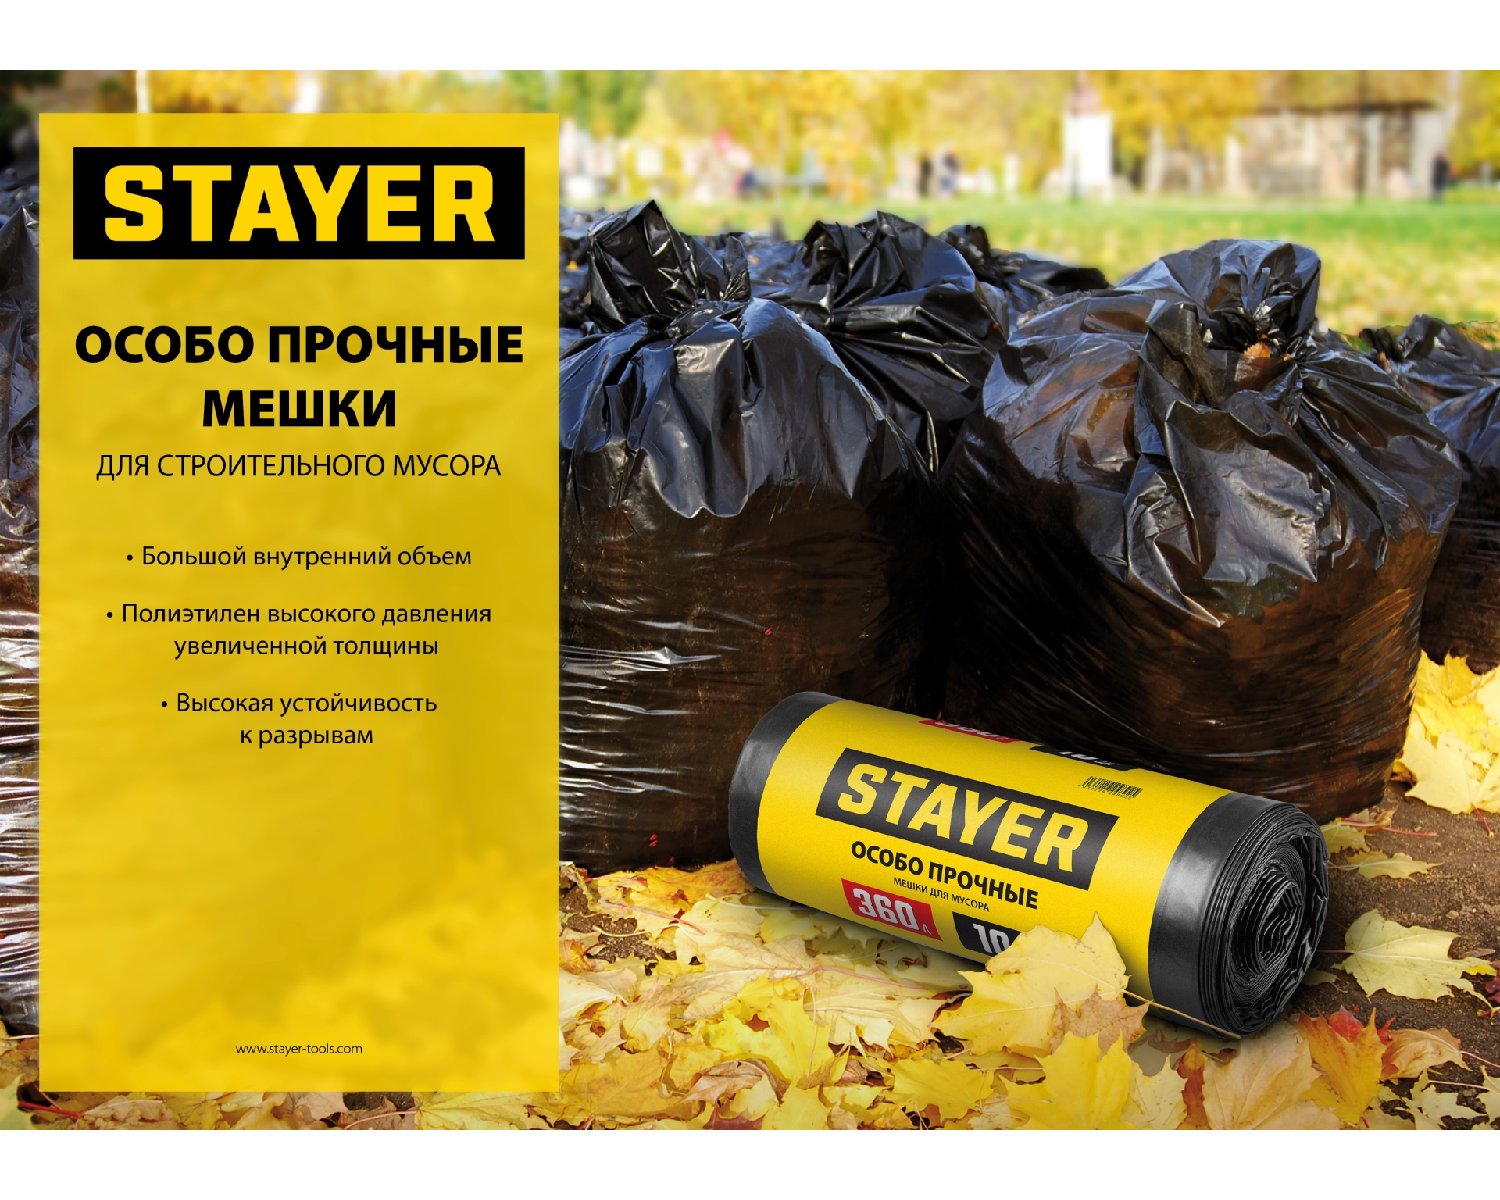 Строительные мусорные мешки STAYER 300л, 10шт, особопрочные, черные, HEAVY DUTY (39157-300)